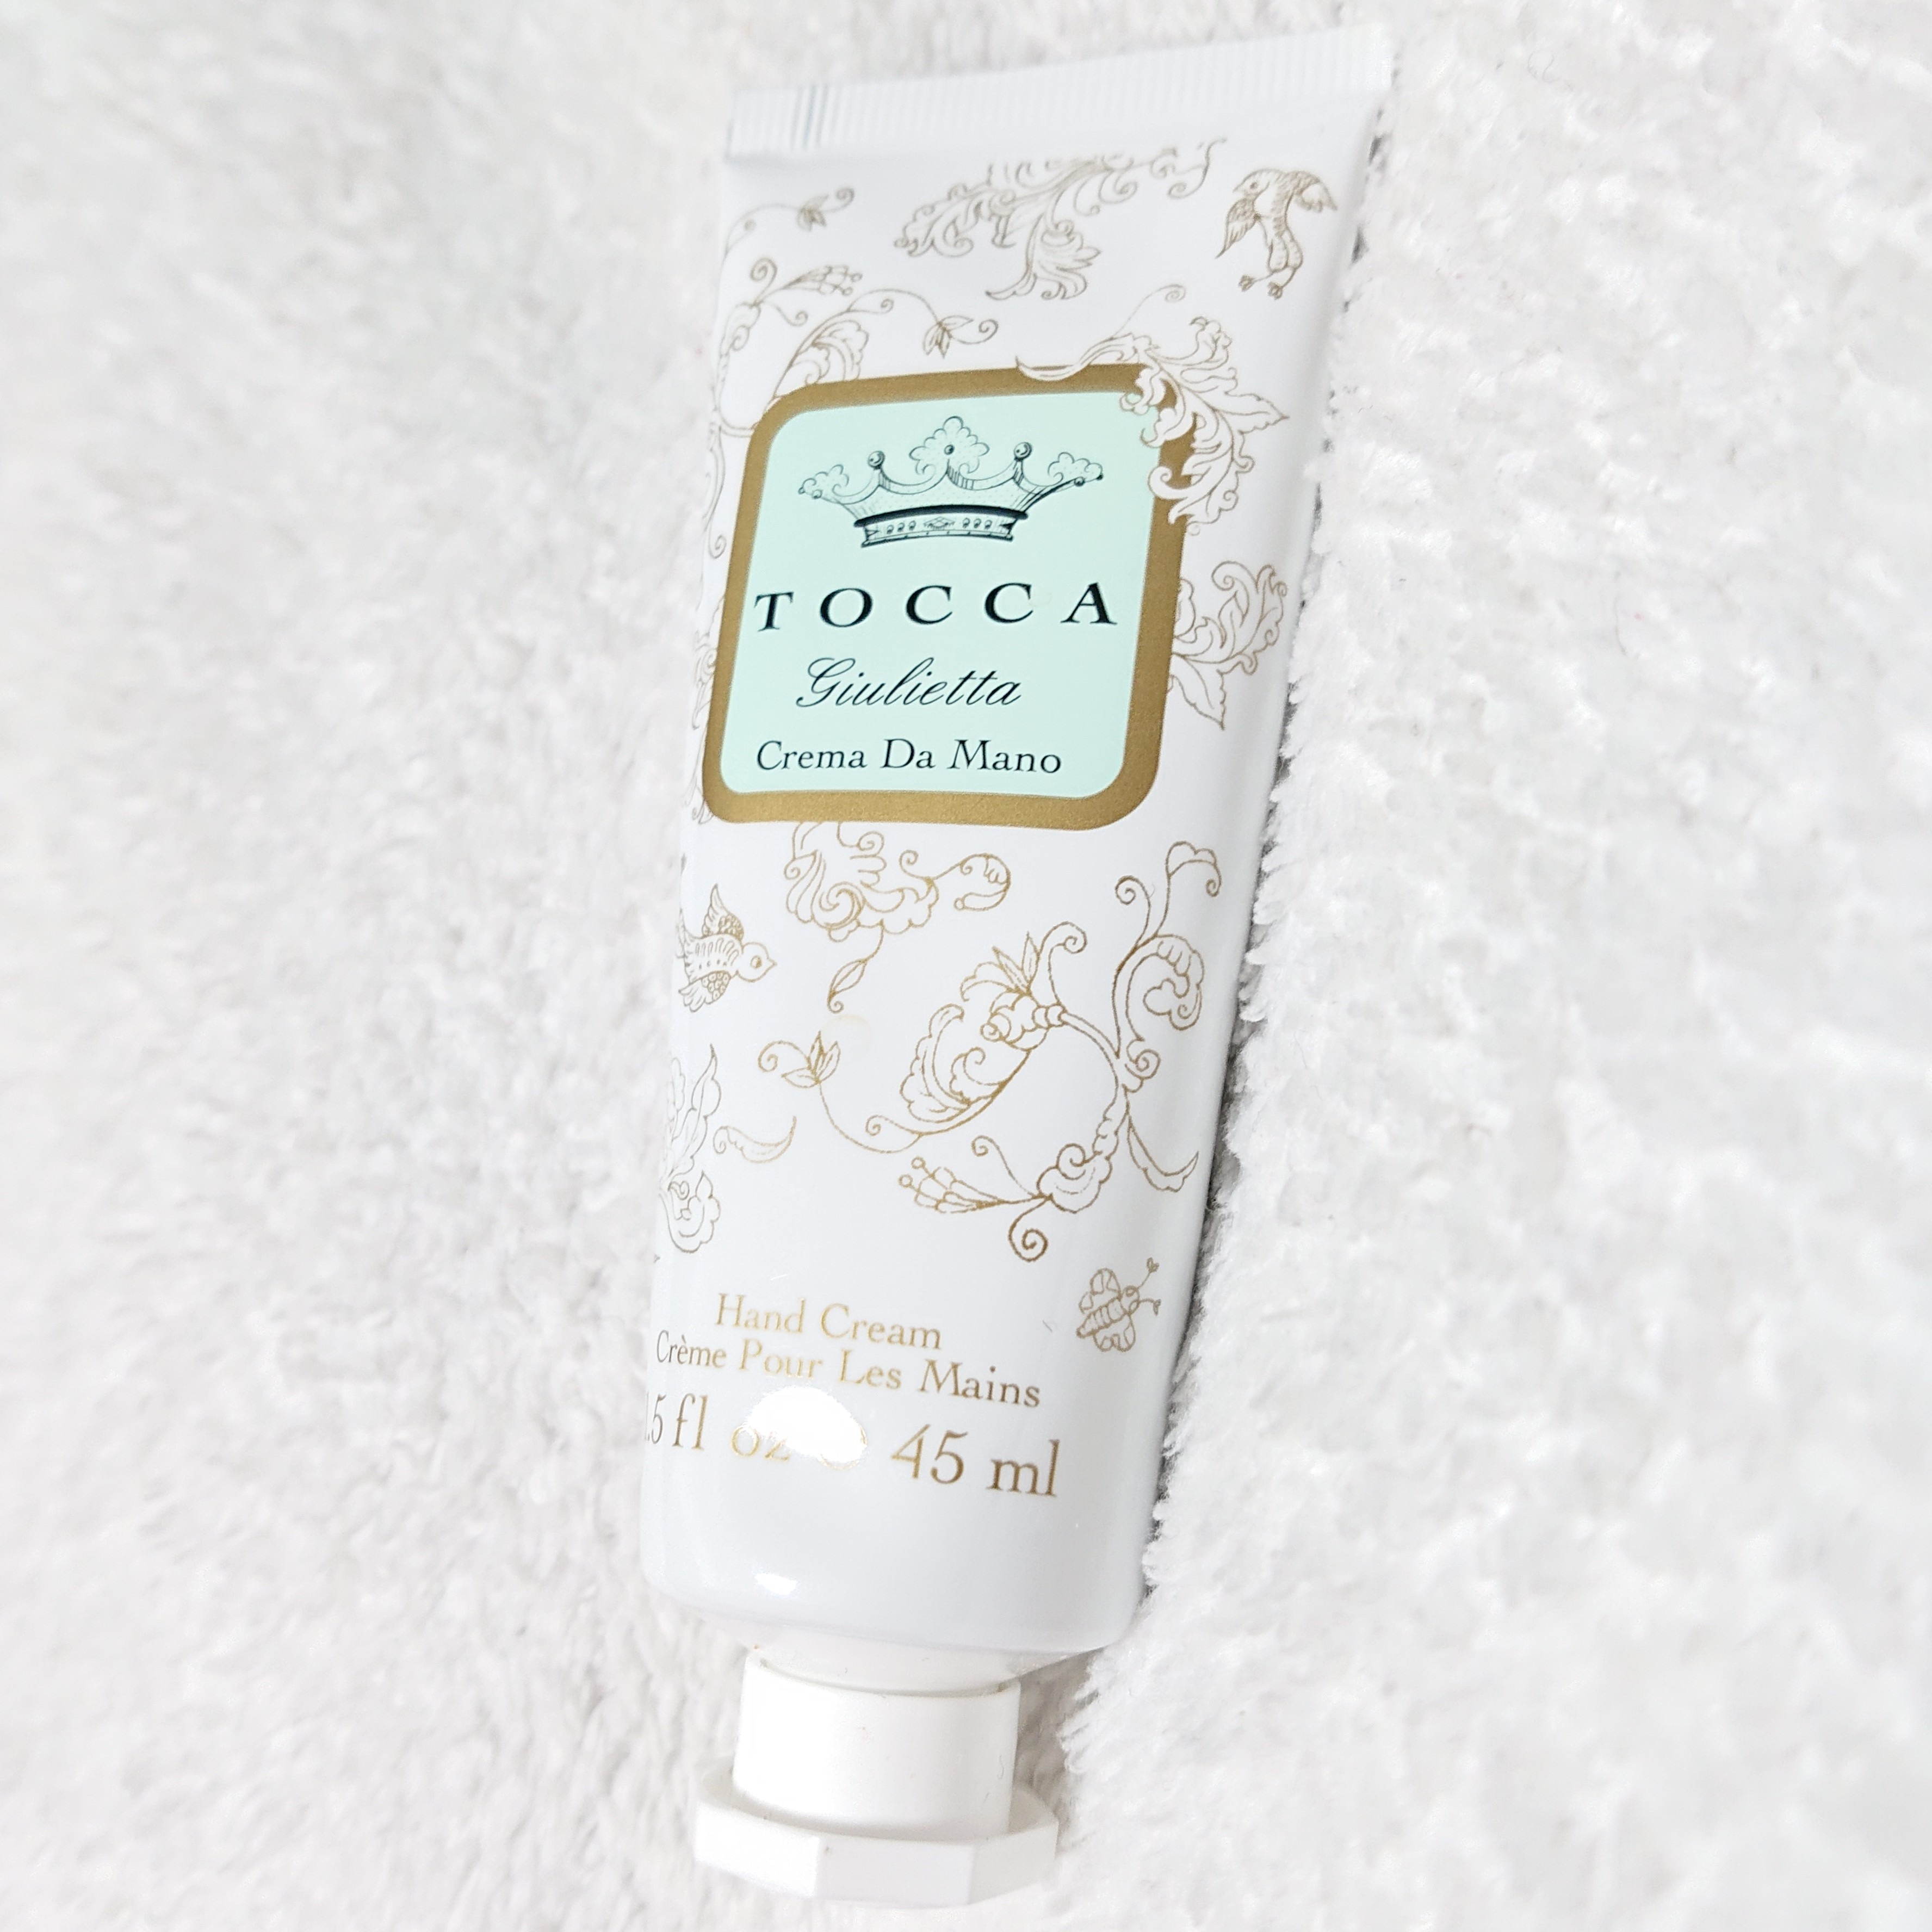 TOCCA(トッカ) / ハンドクリーム ジュリエッタの香りの公式商品情報